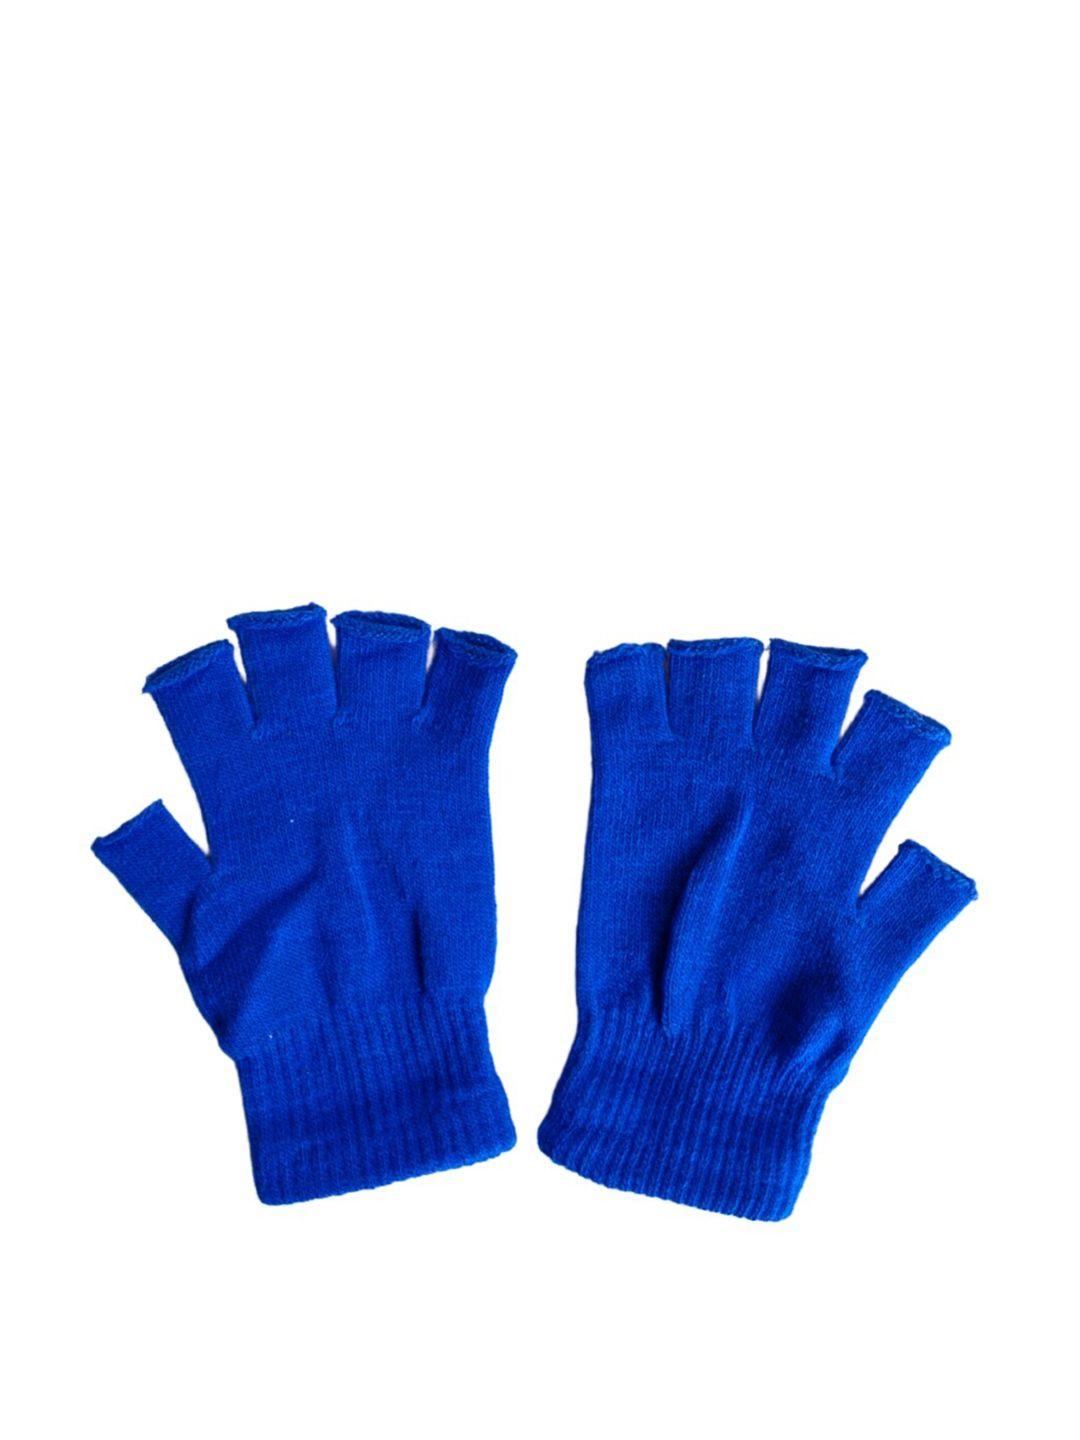 TIPY TIPY TAP Girls Half Finger Gloves